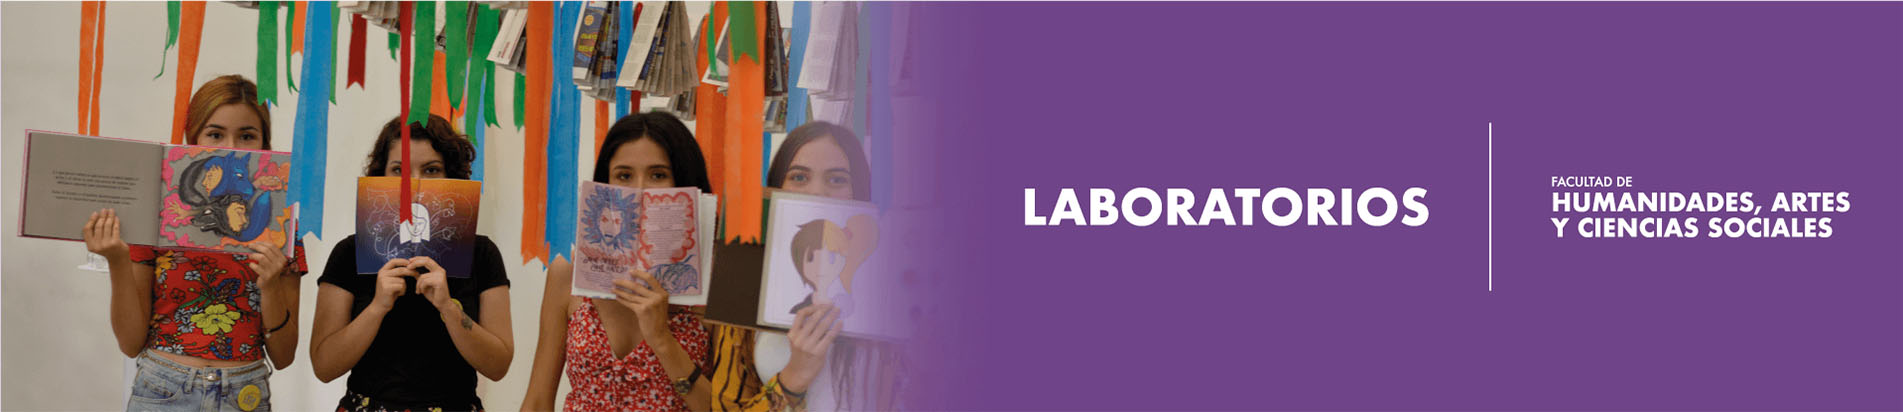 Imagen a manera de banner para señalar la sección de los laboratorios del programa de Diseño de la Universidad de Ibagué